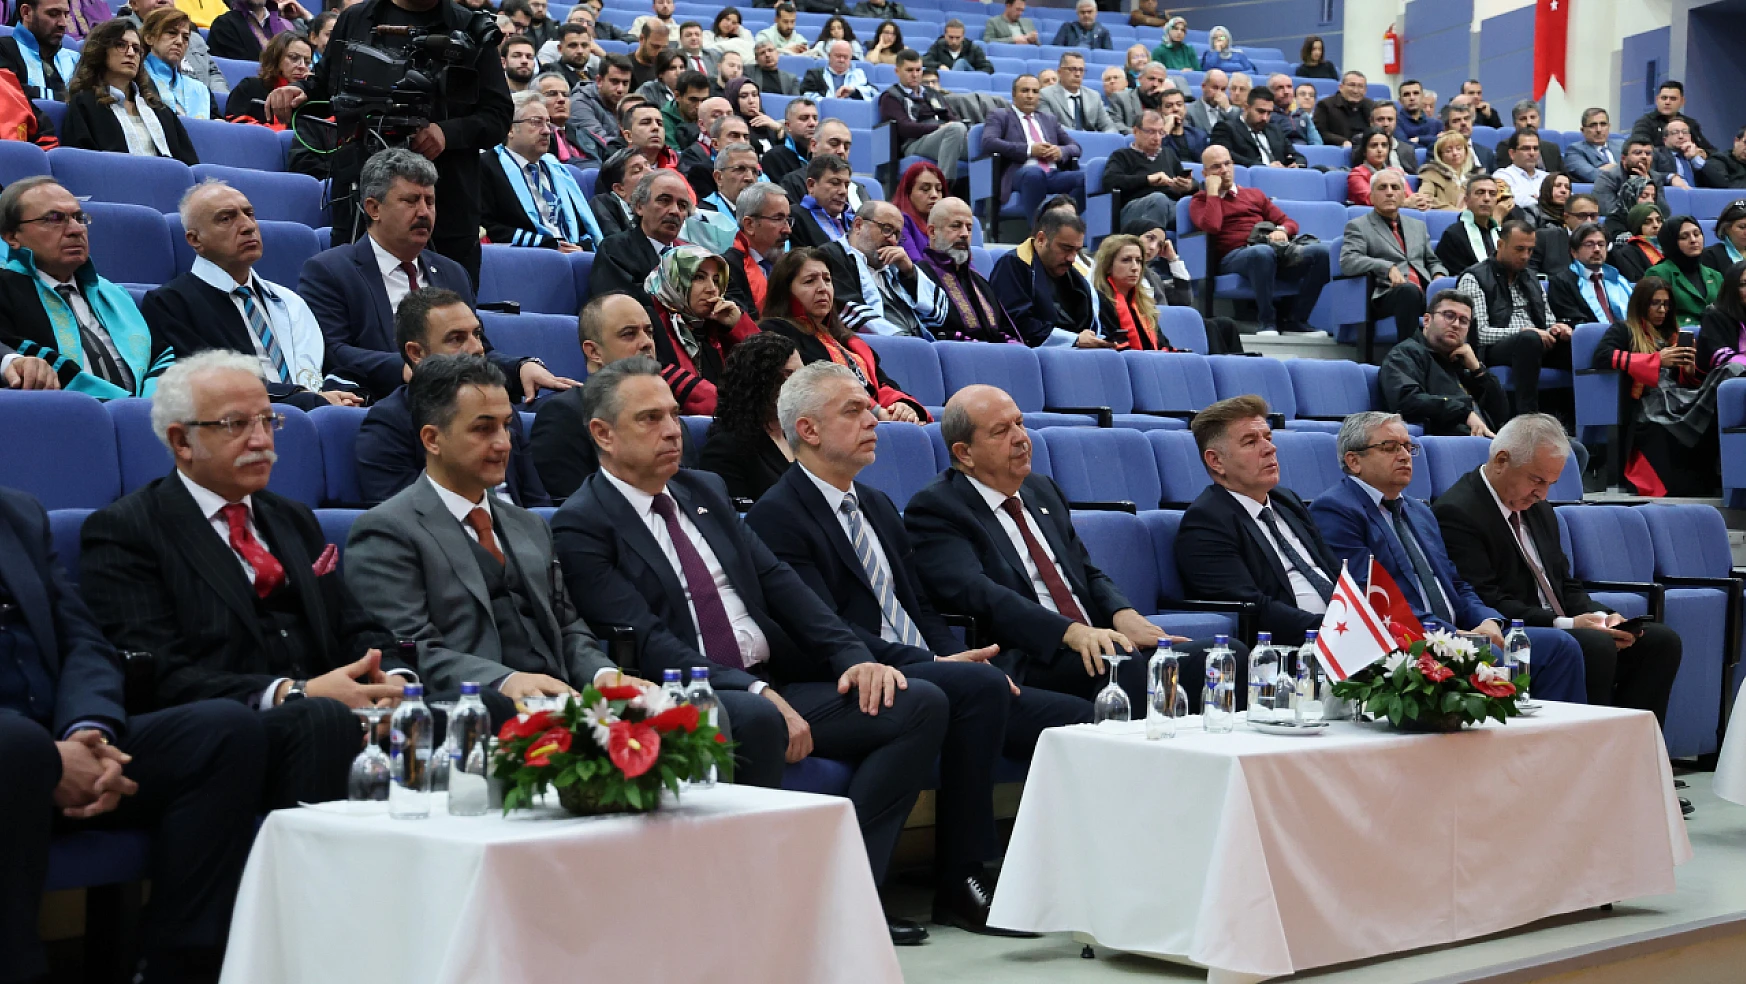 Konya'daki o üniversitede akademik yıl açılışı oldu: KKTC Cumhurbaşkanına fahri doktora ünvanı verildi!